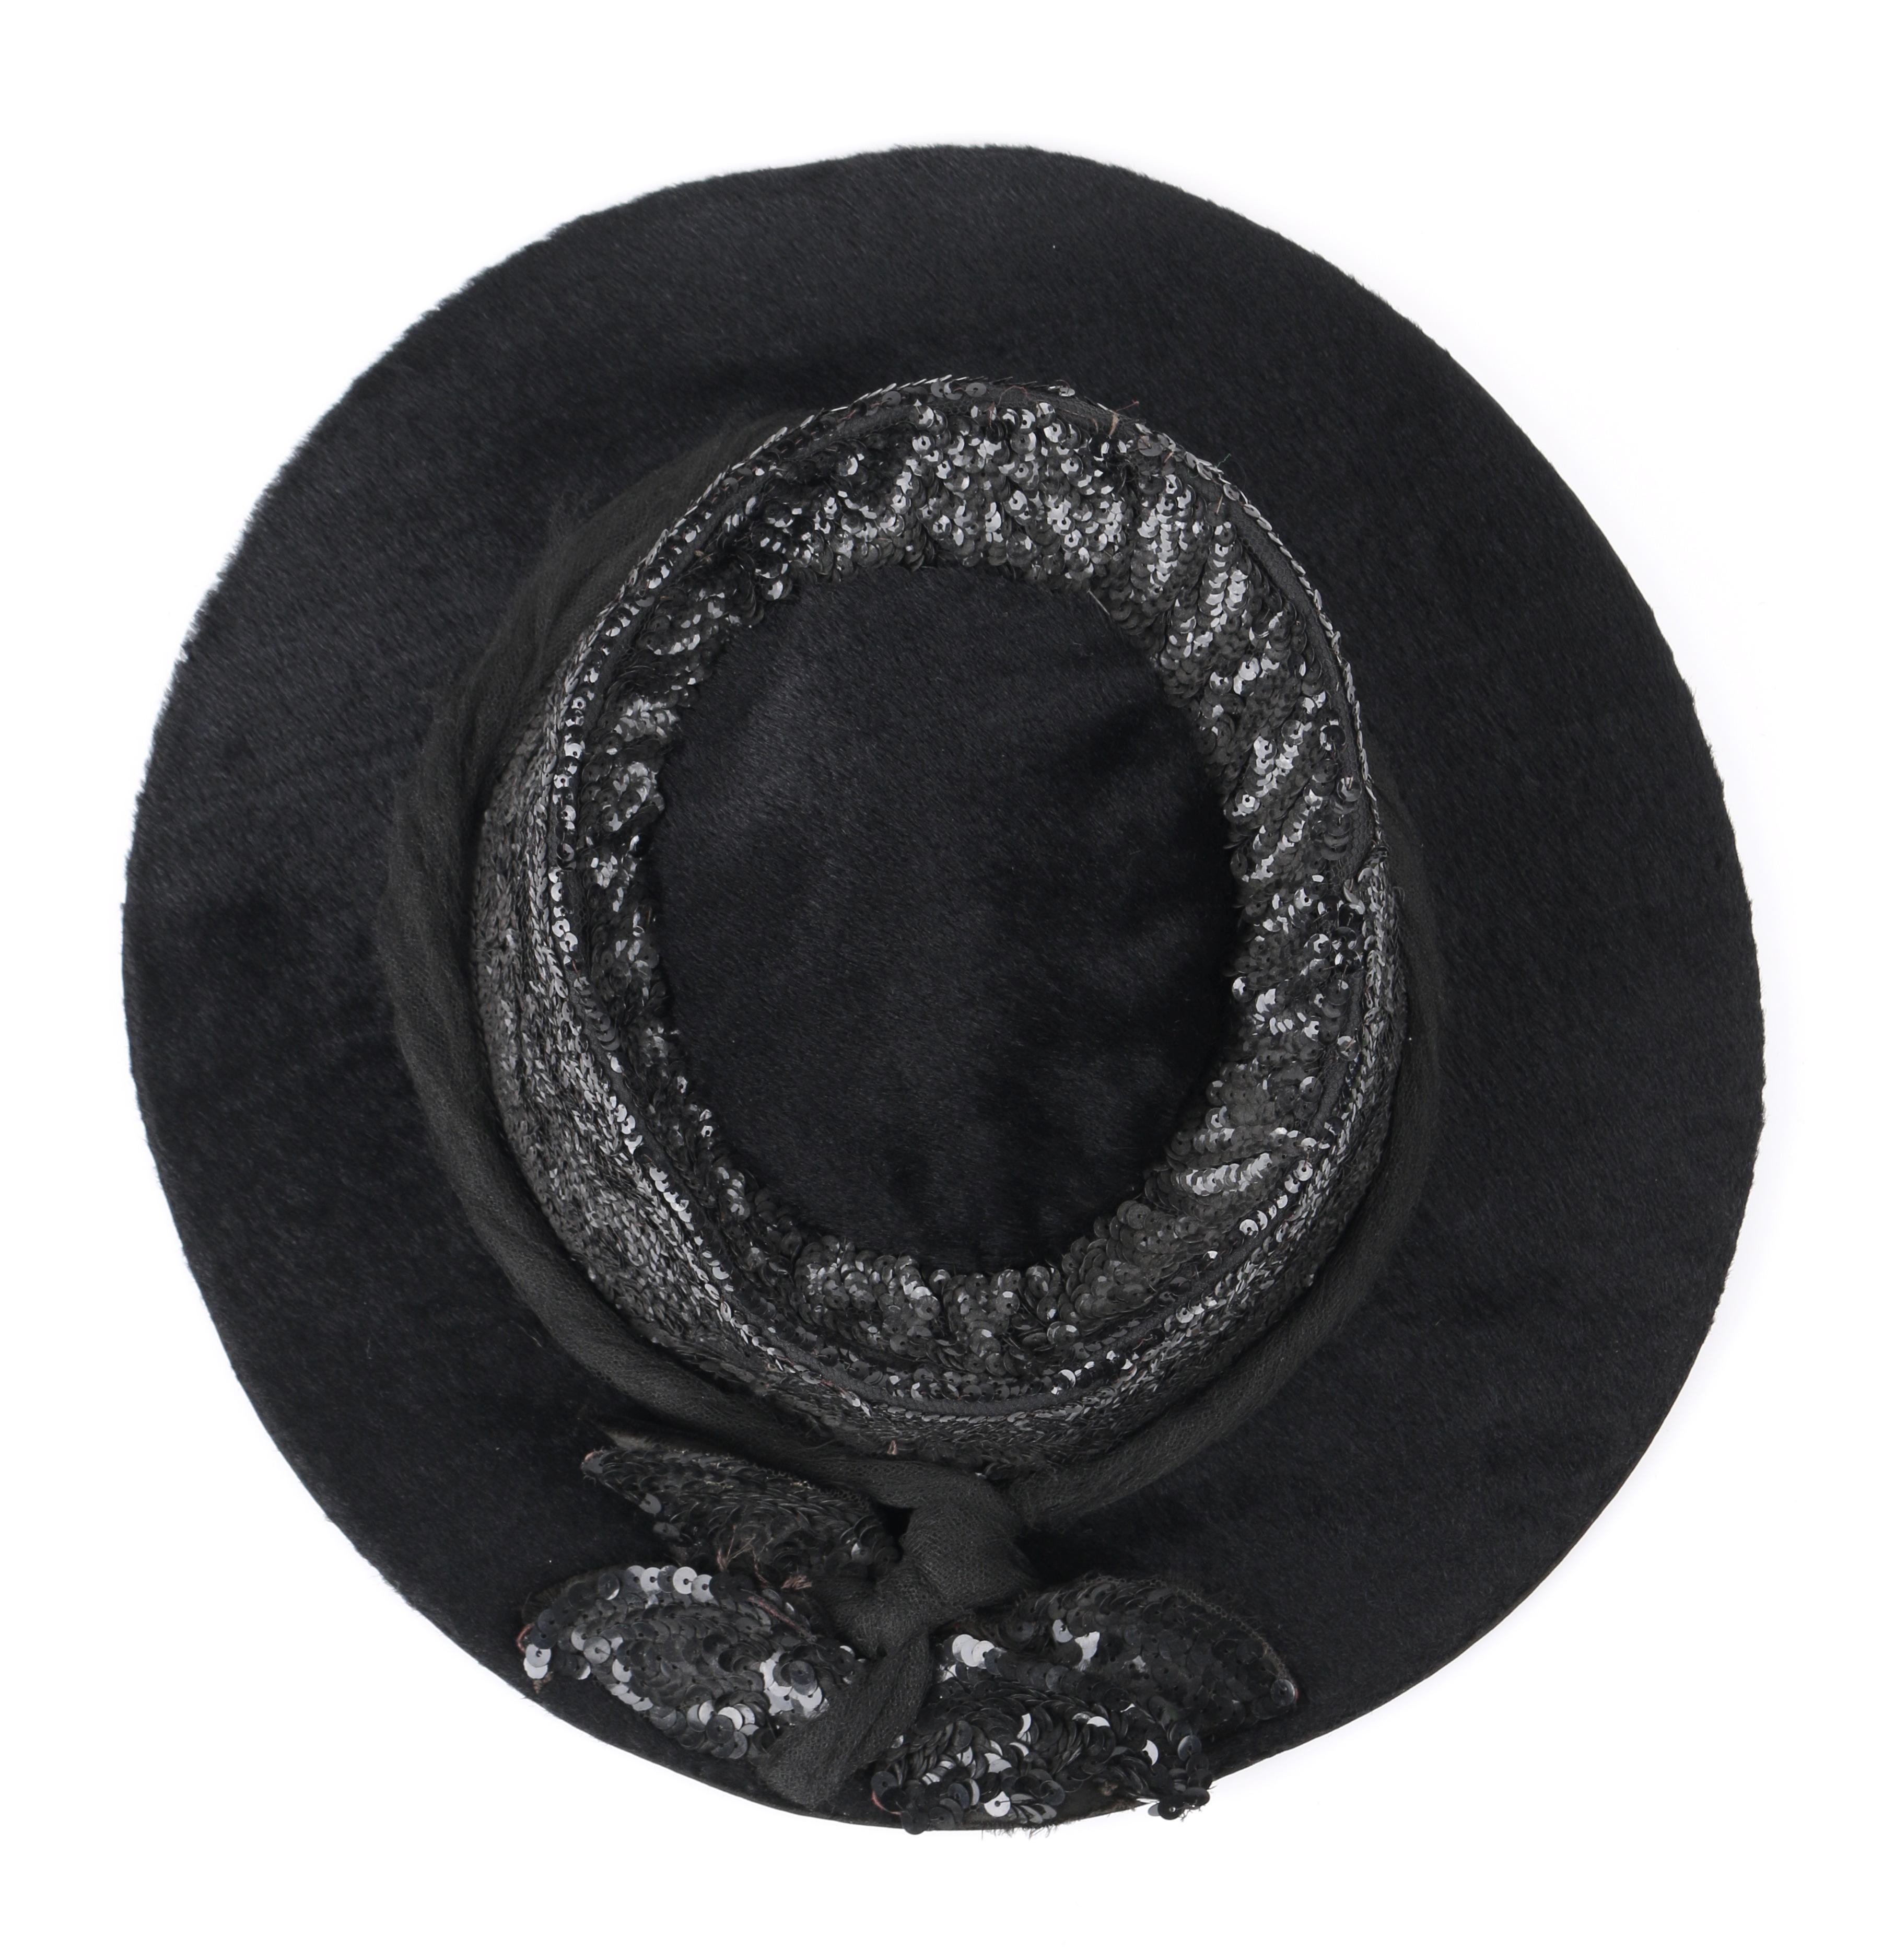 EDWARDIAN c.1900's Black Beaver Fur Felt Sequin Embellished Afternoon Hat 5